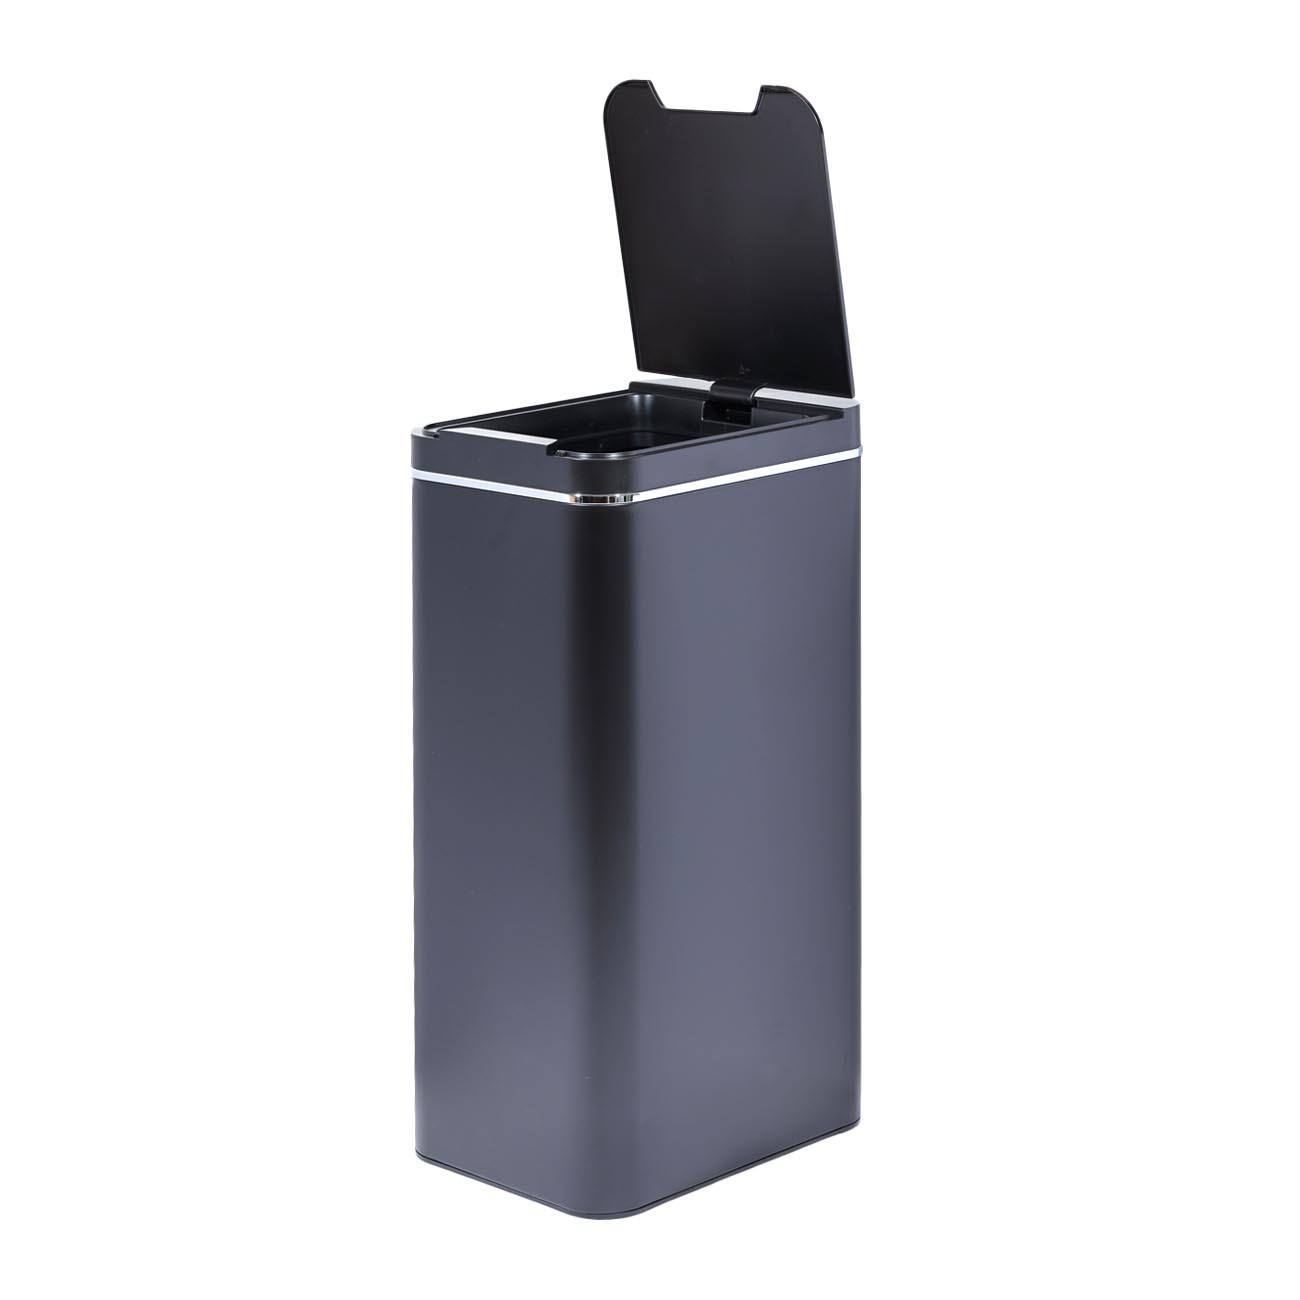 Ведро для мусора, 50 л, сенсорное, металл/пластик, прямоугольное, черное, Style, Sensor Bin